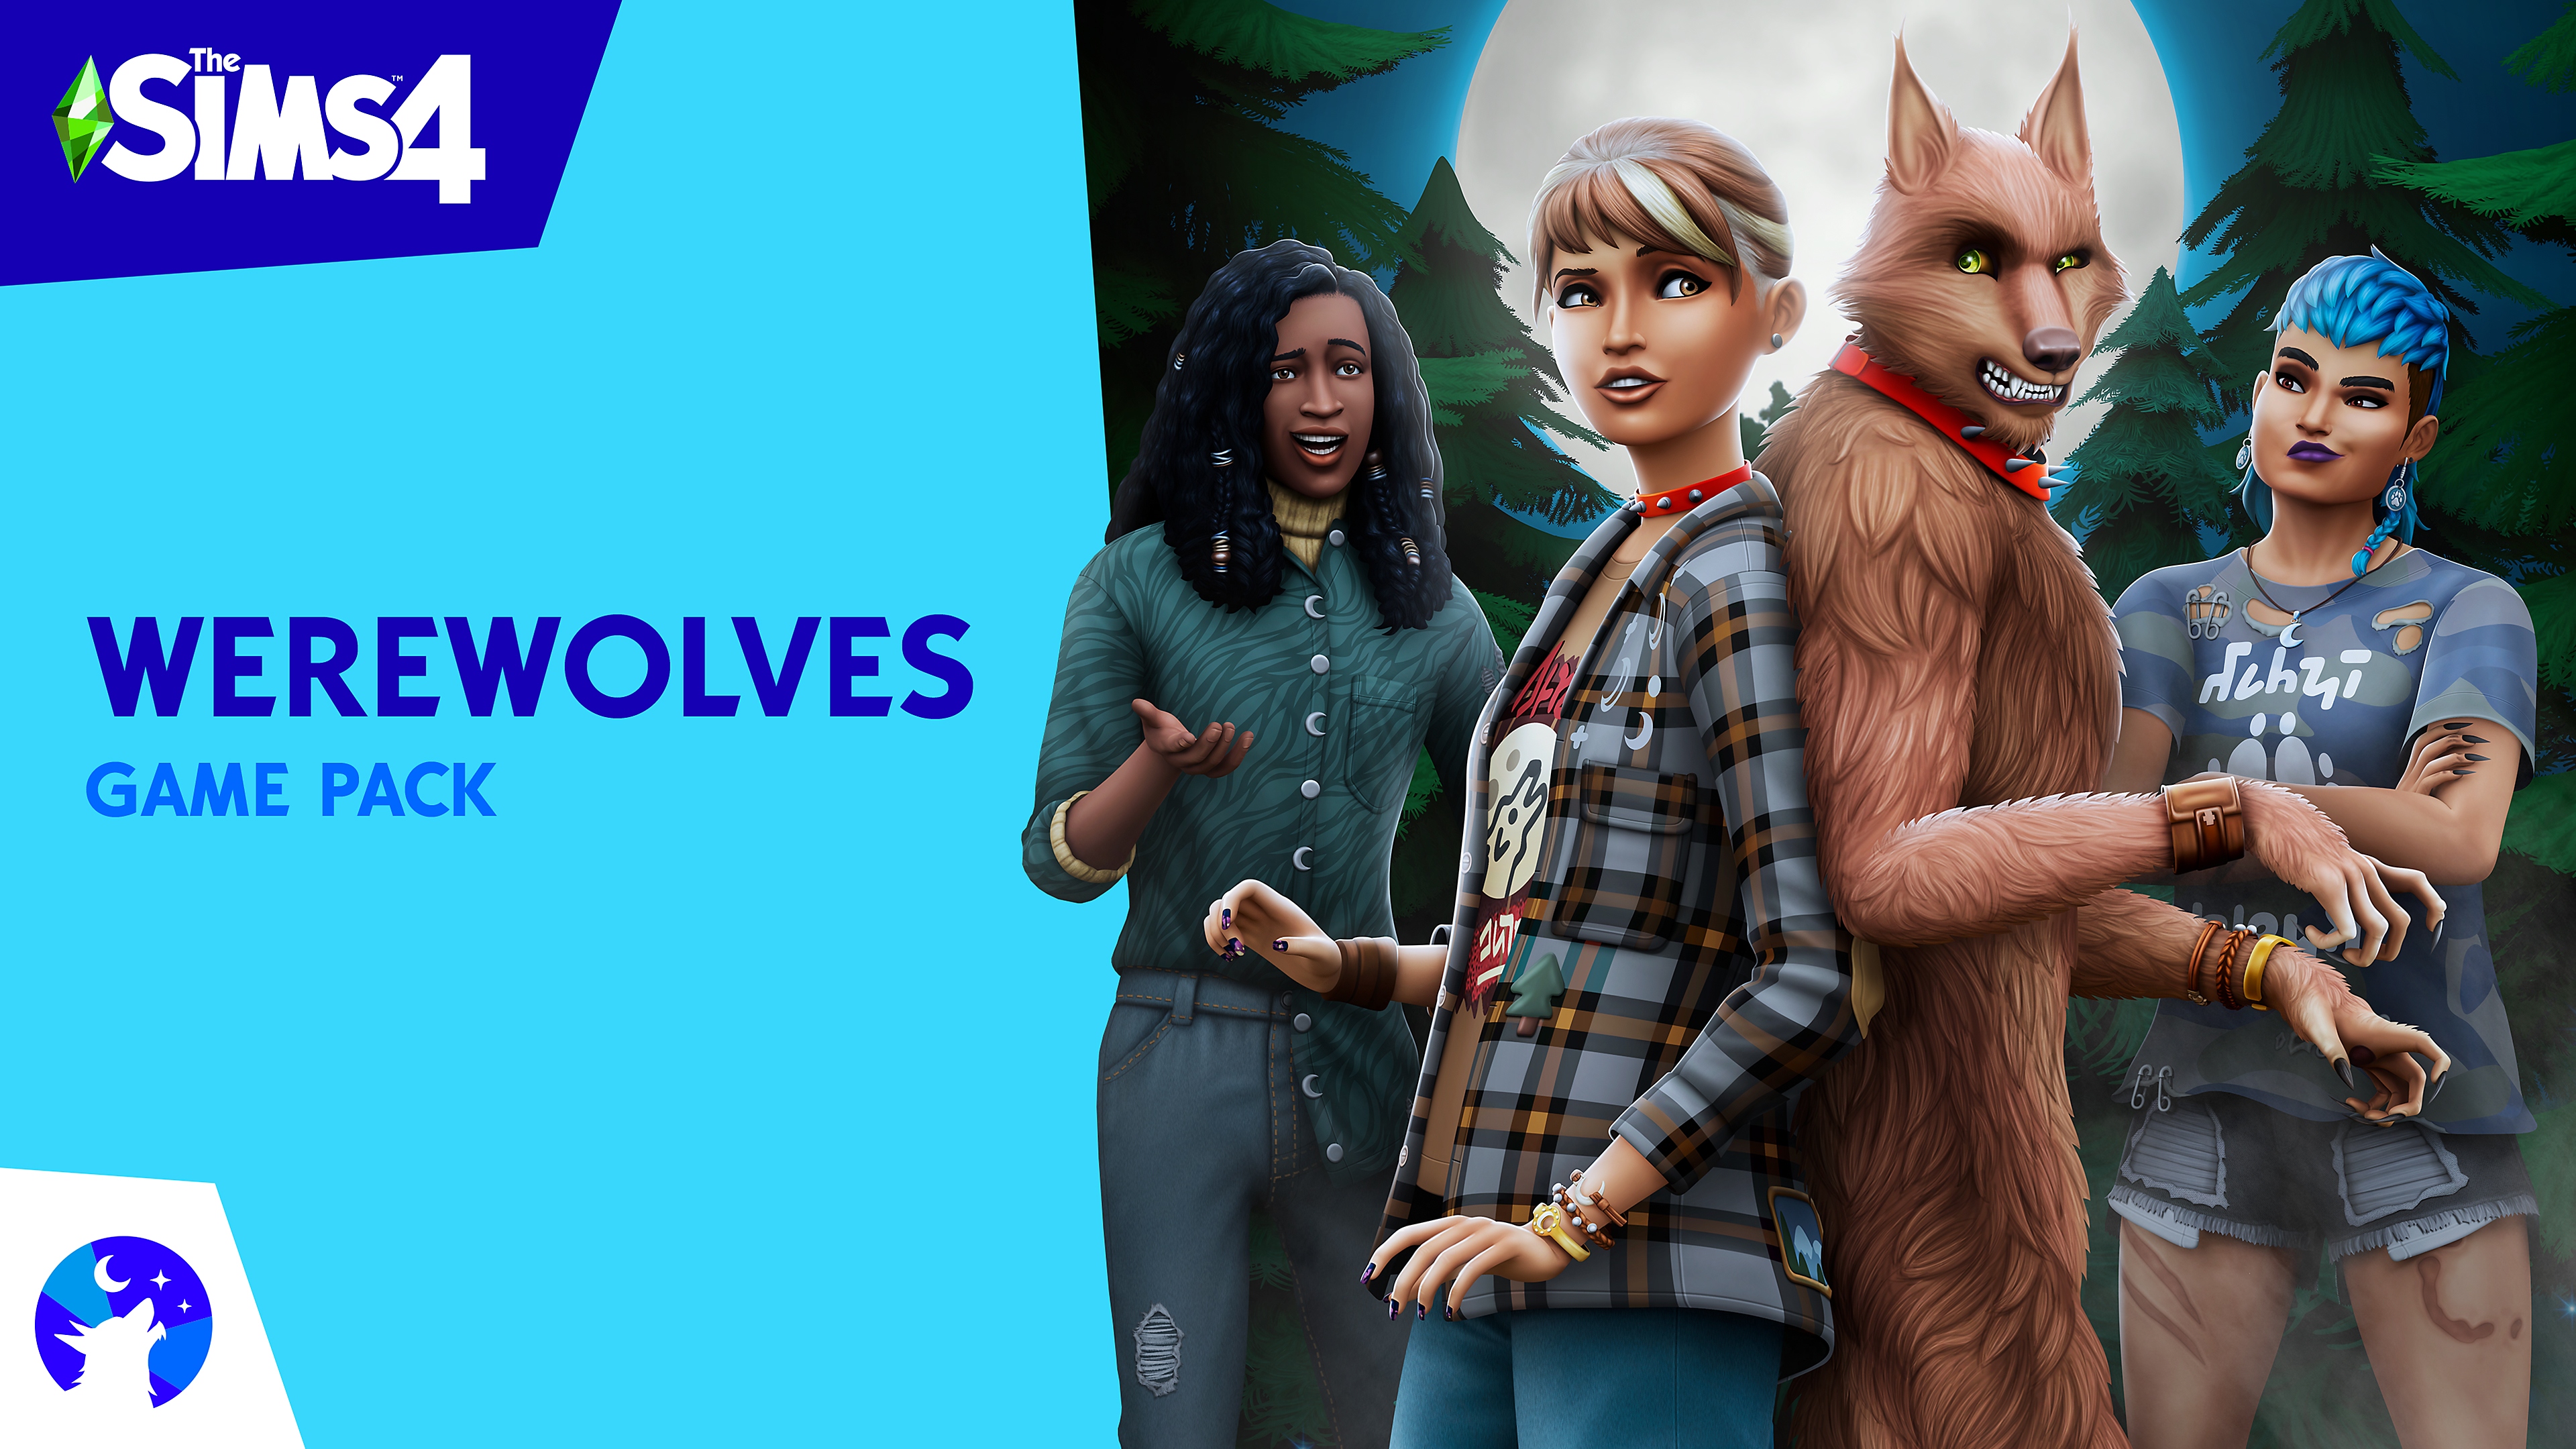 Arte principal del pack de contenido Los Sims 4 Licántropos que muestra los personajes Sims y un hombre lobo